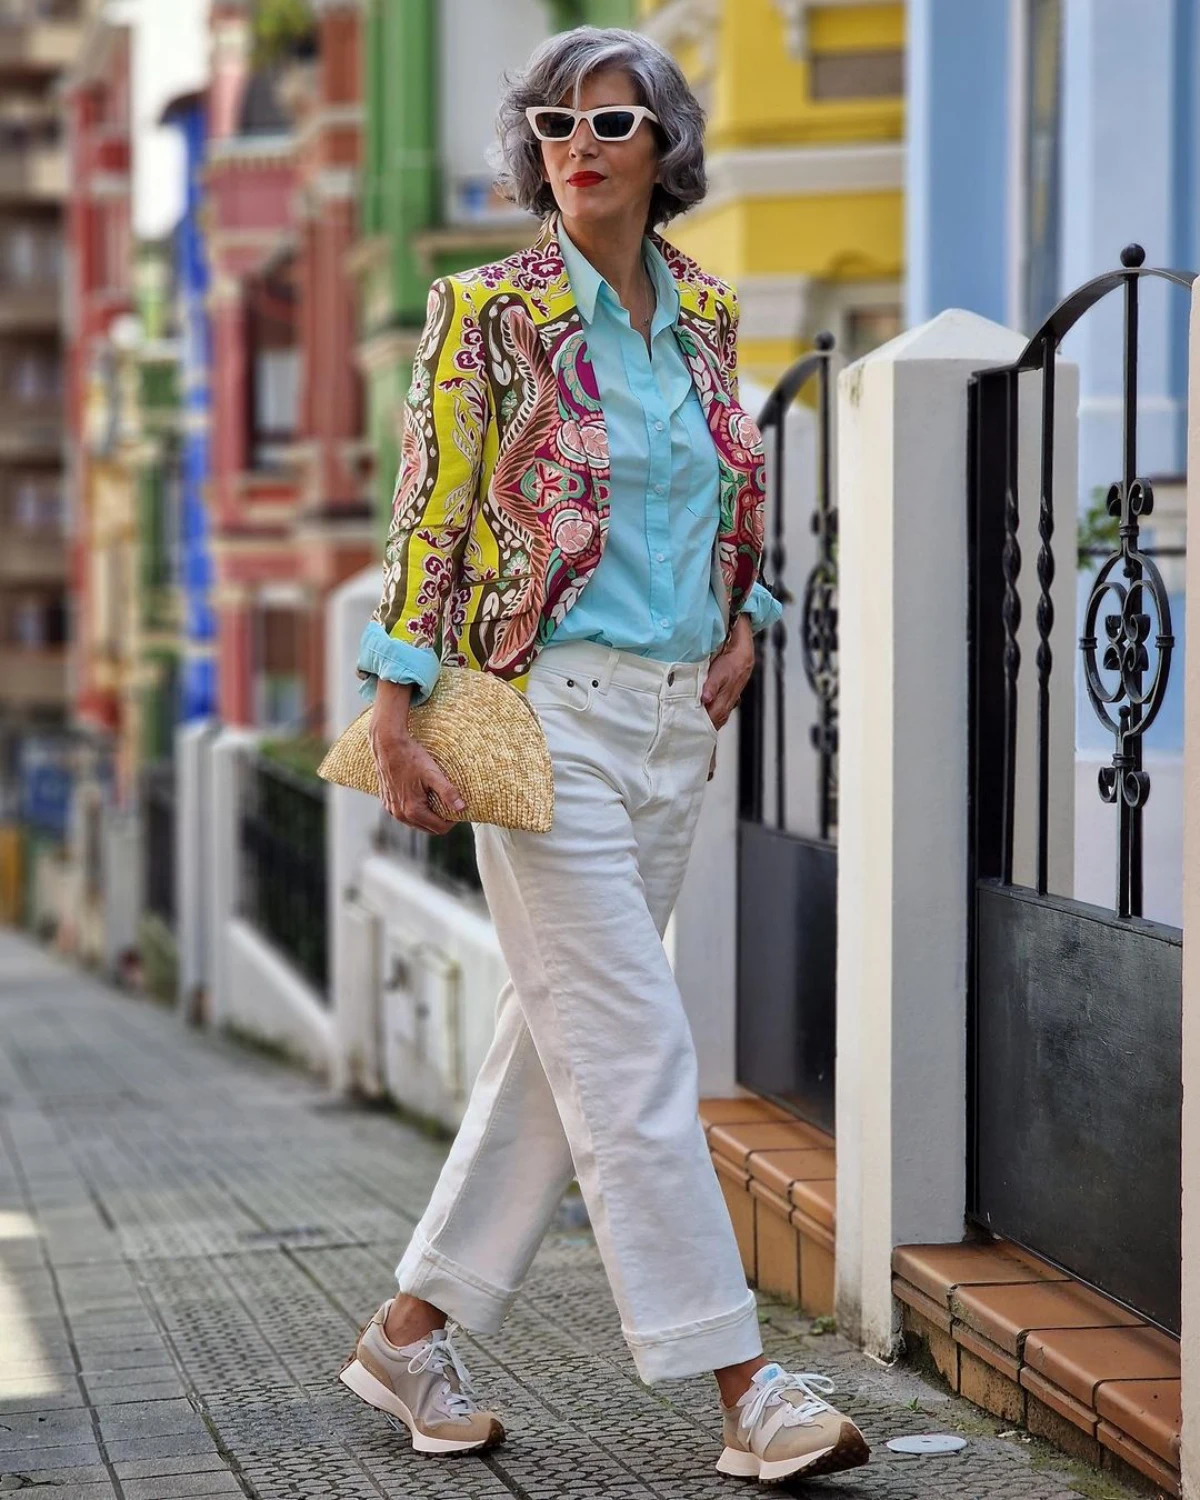 veste boheme jean blanc chemise blue baskets style femme 50 ans